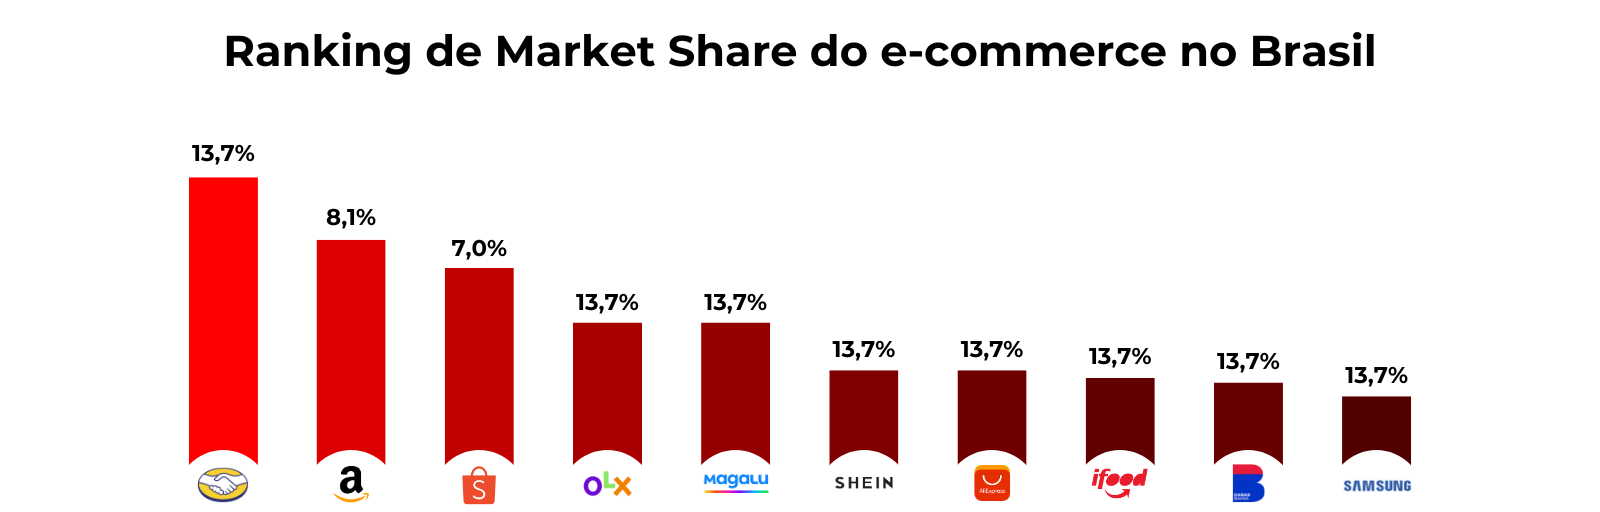 Gráfico com o ranking do Market Share do e-commerce no Brasil.